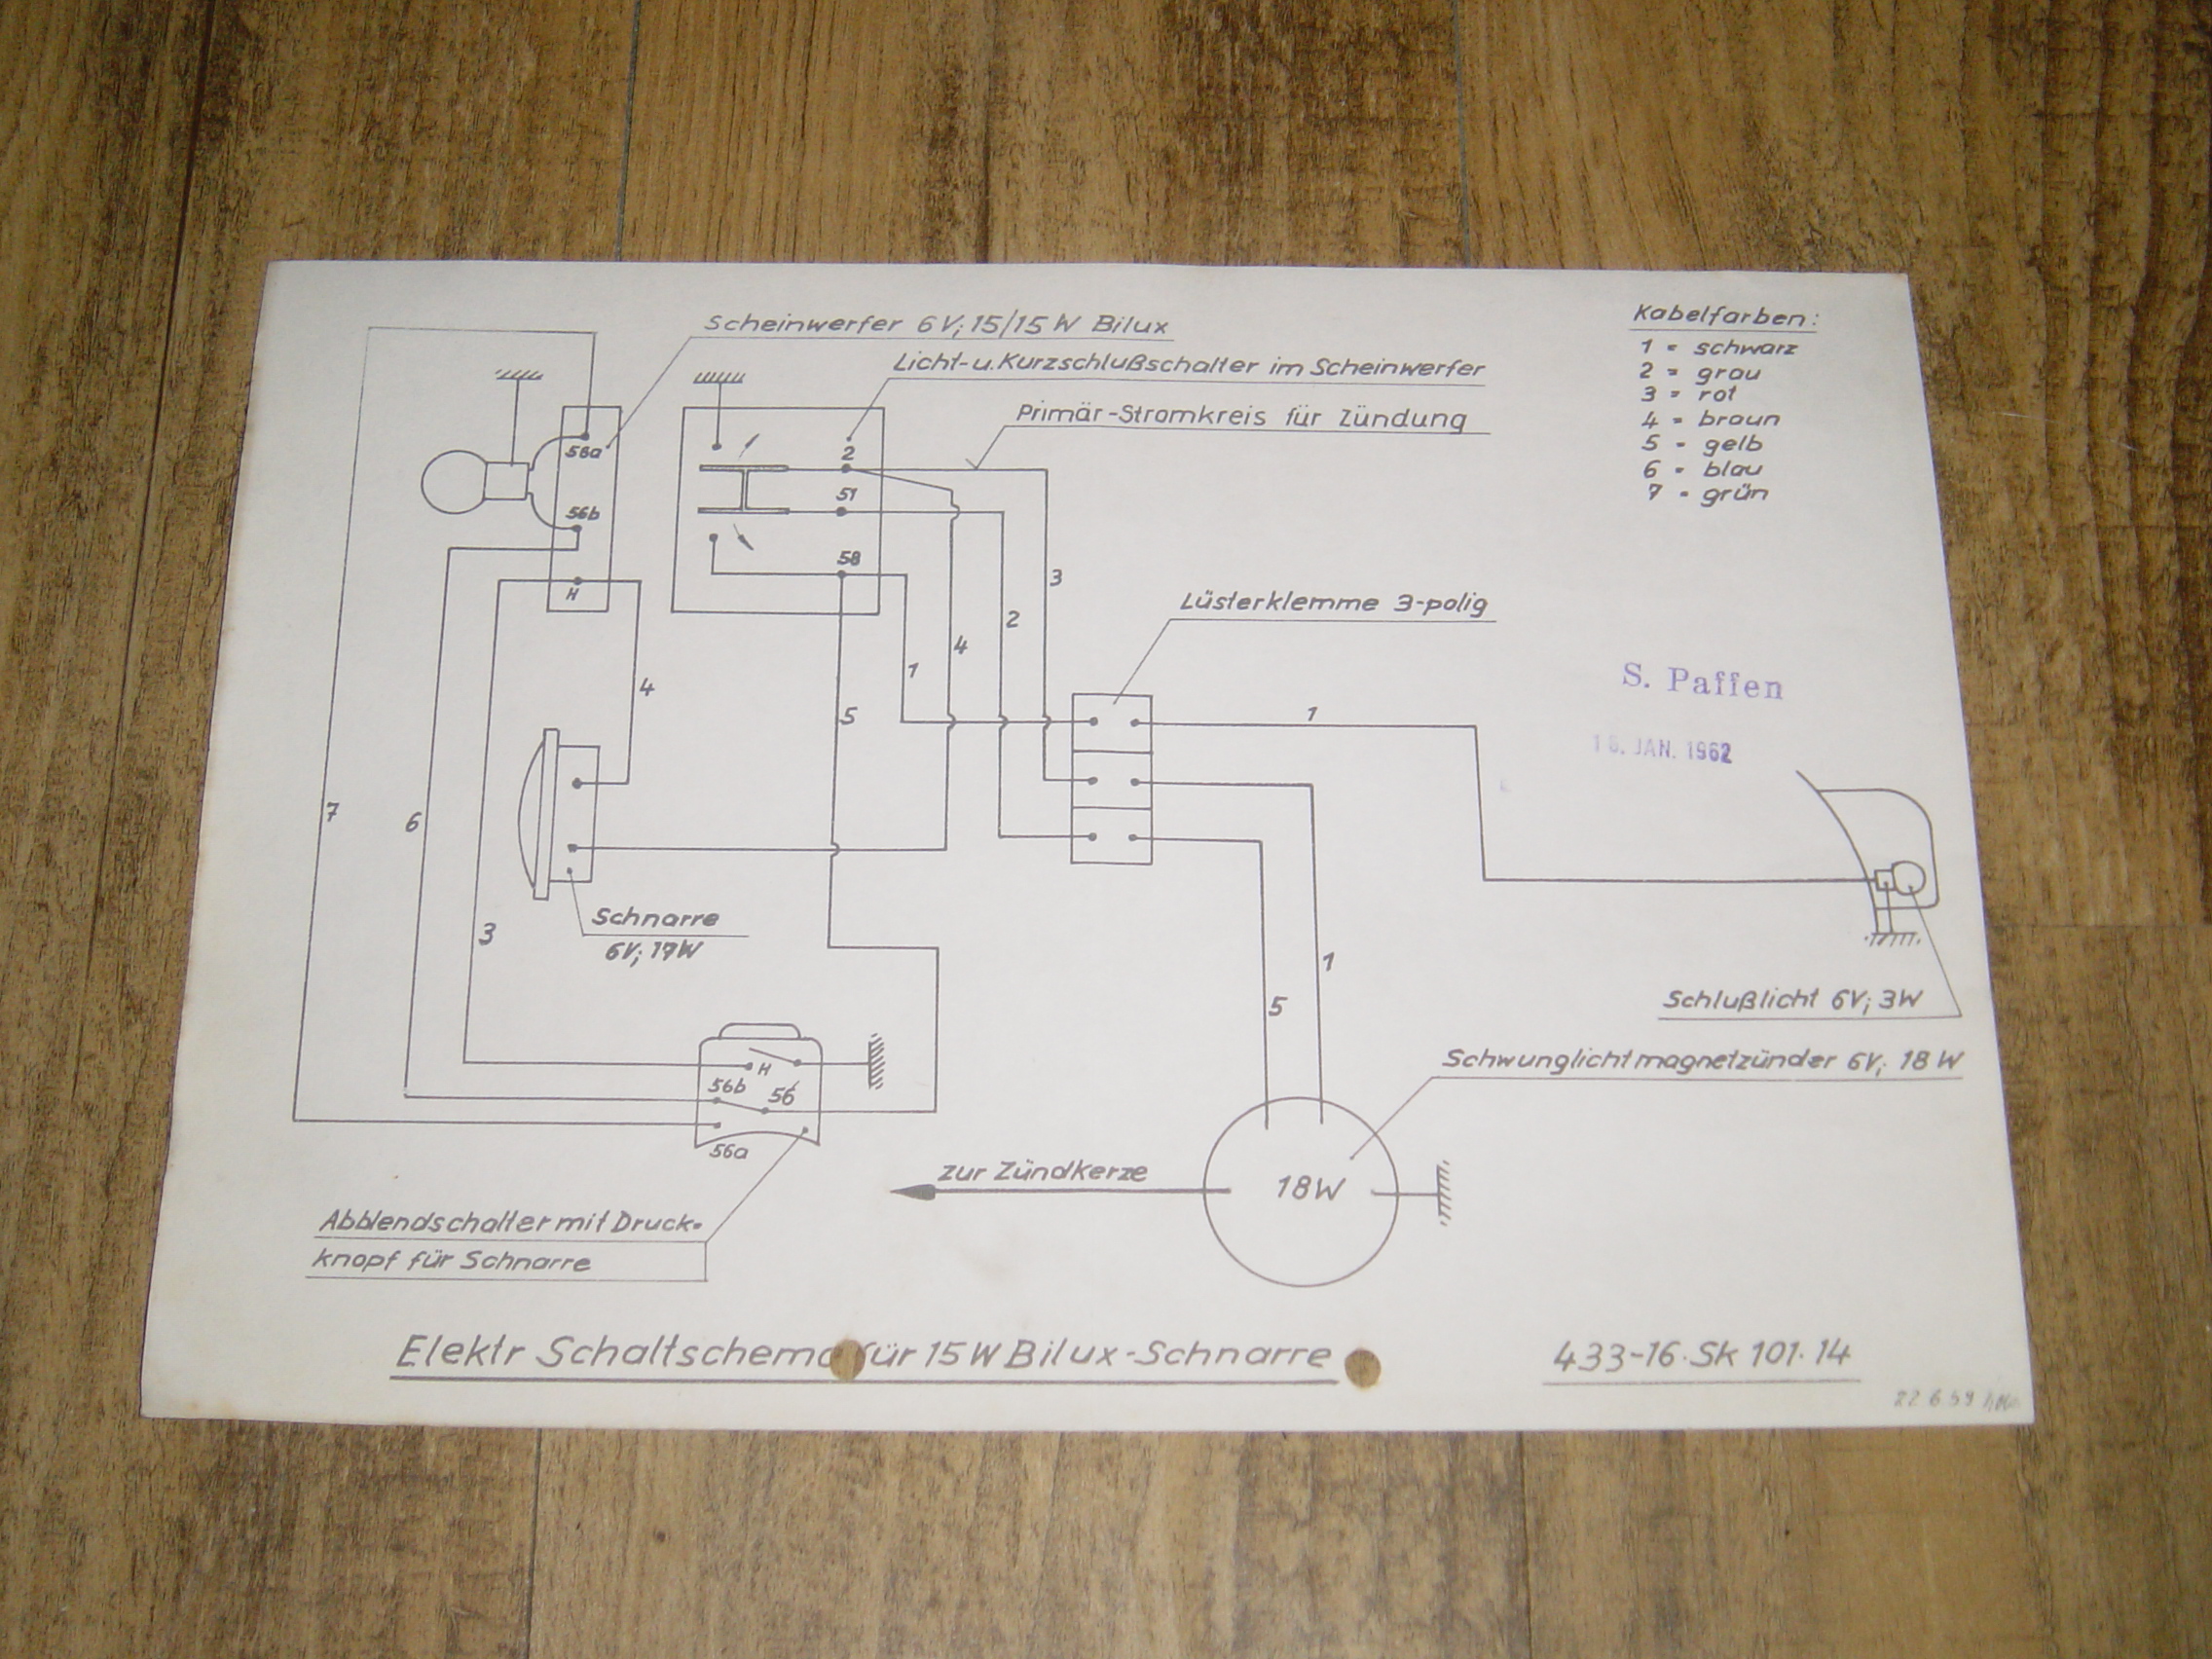 Electical diagram 433 6V/18 Watt 15 Watt Bilux + Schnarre